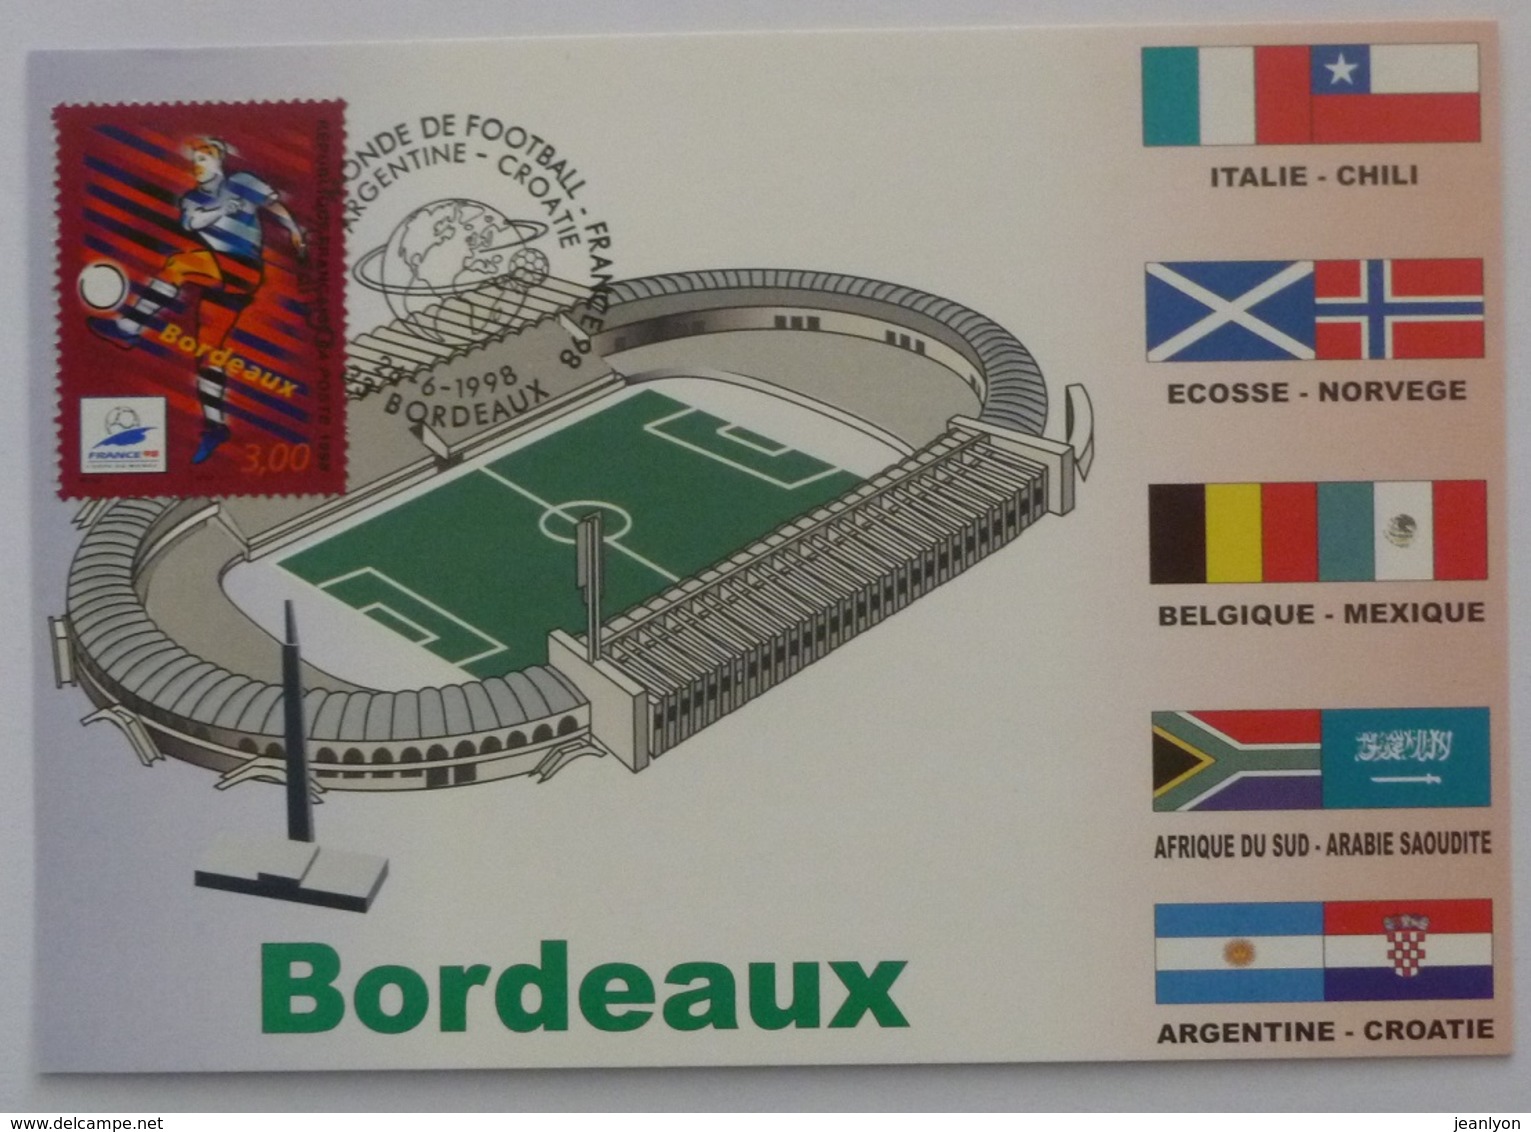 BORDEAUX (33) - Stade, Carte Postale Avec Timbre France 98 Bordeaux (football), Cachet Match Argentine - Croatie - Football